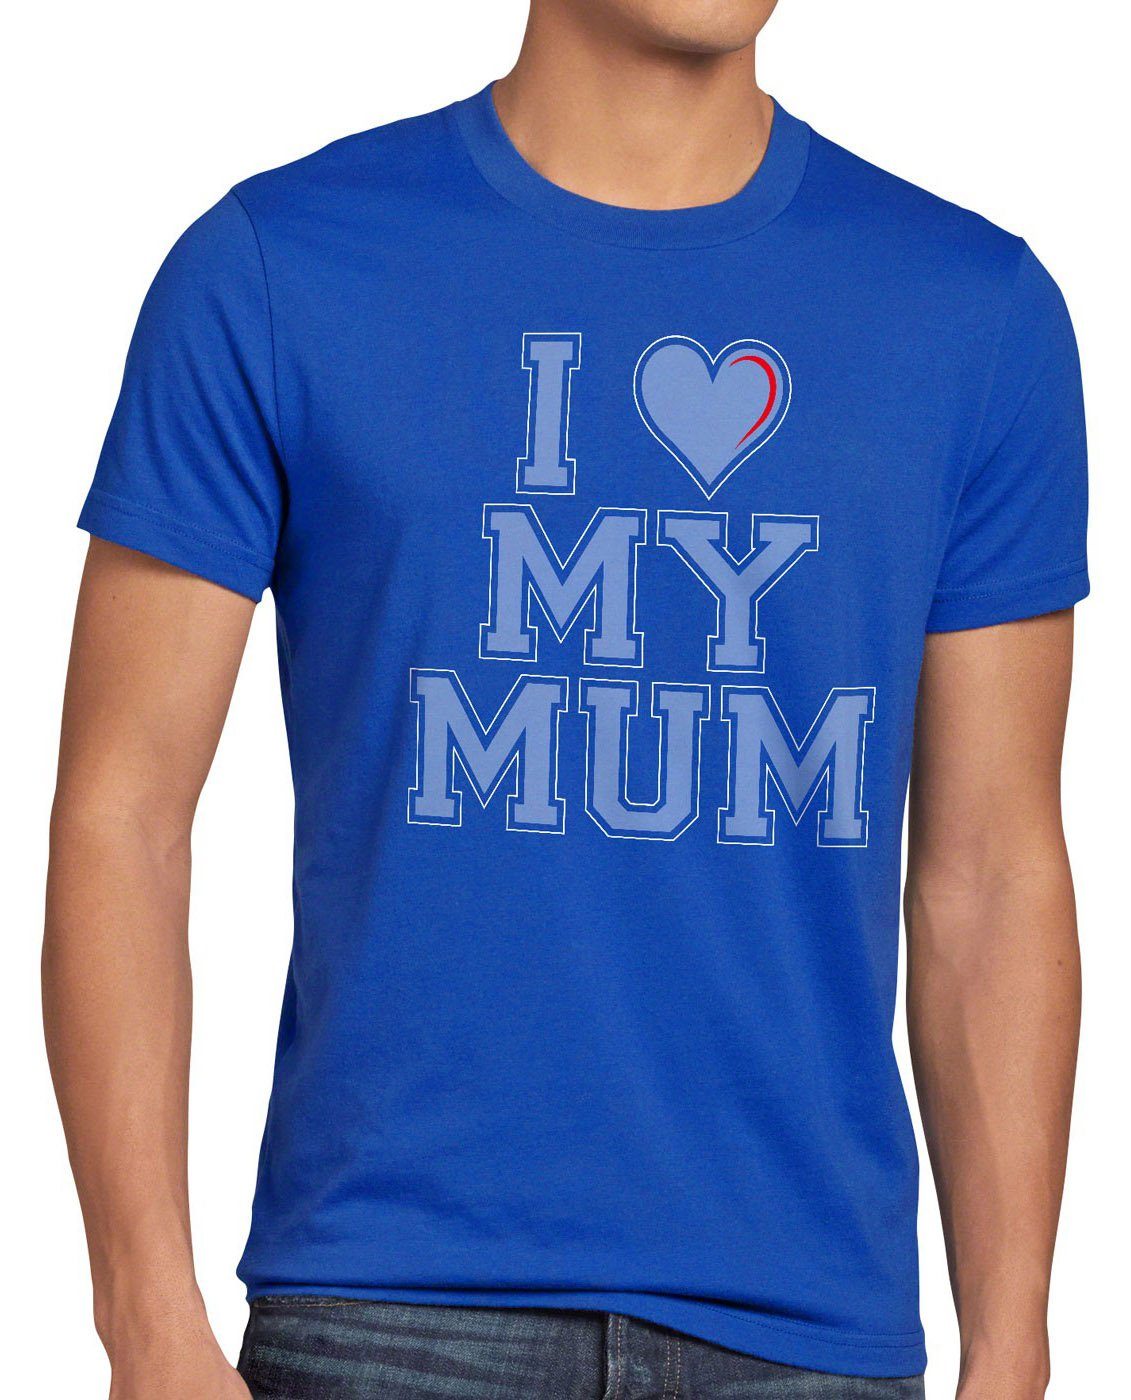 I my mutter york style3 Herren Mum oma love geburtstag T-Shirt Print-Shirt liebe blau new muttertag mama